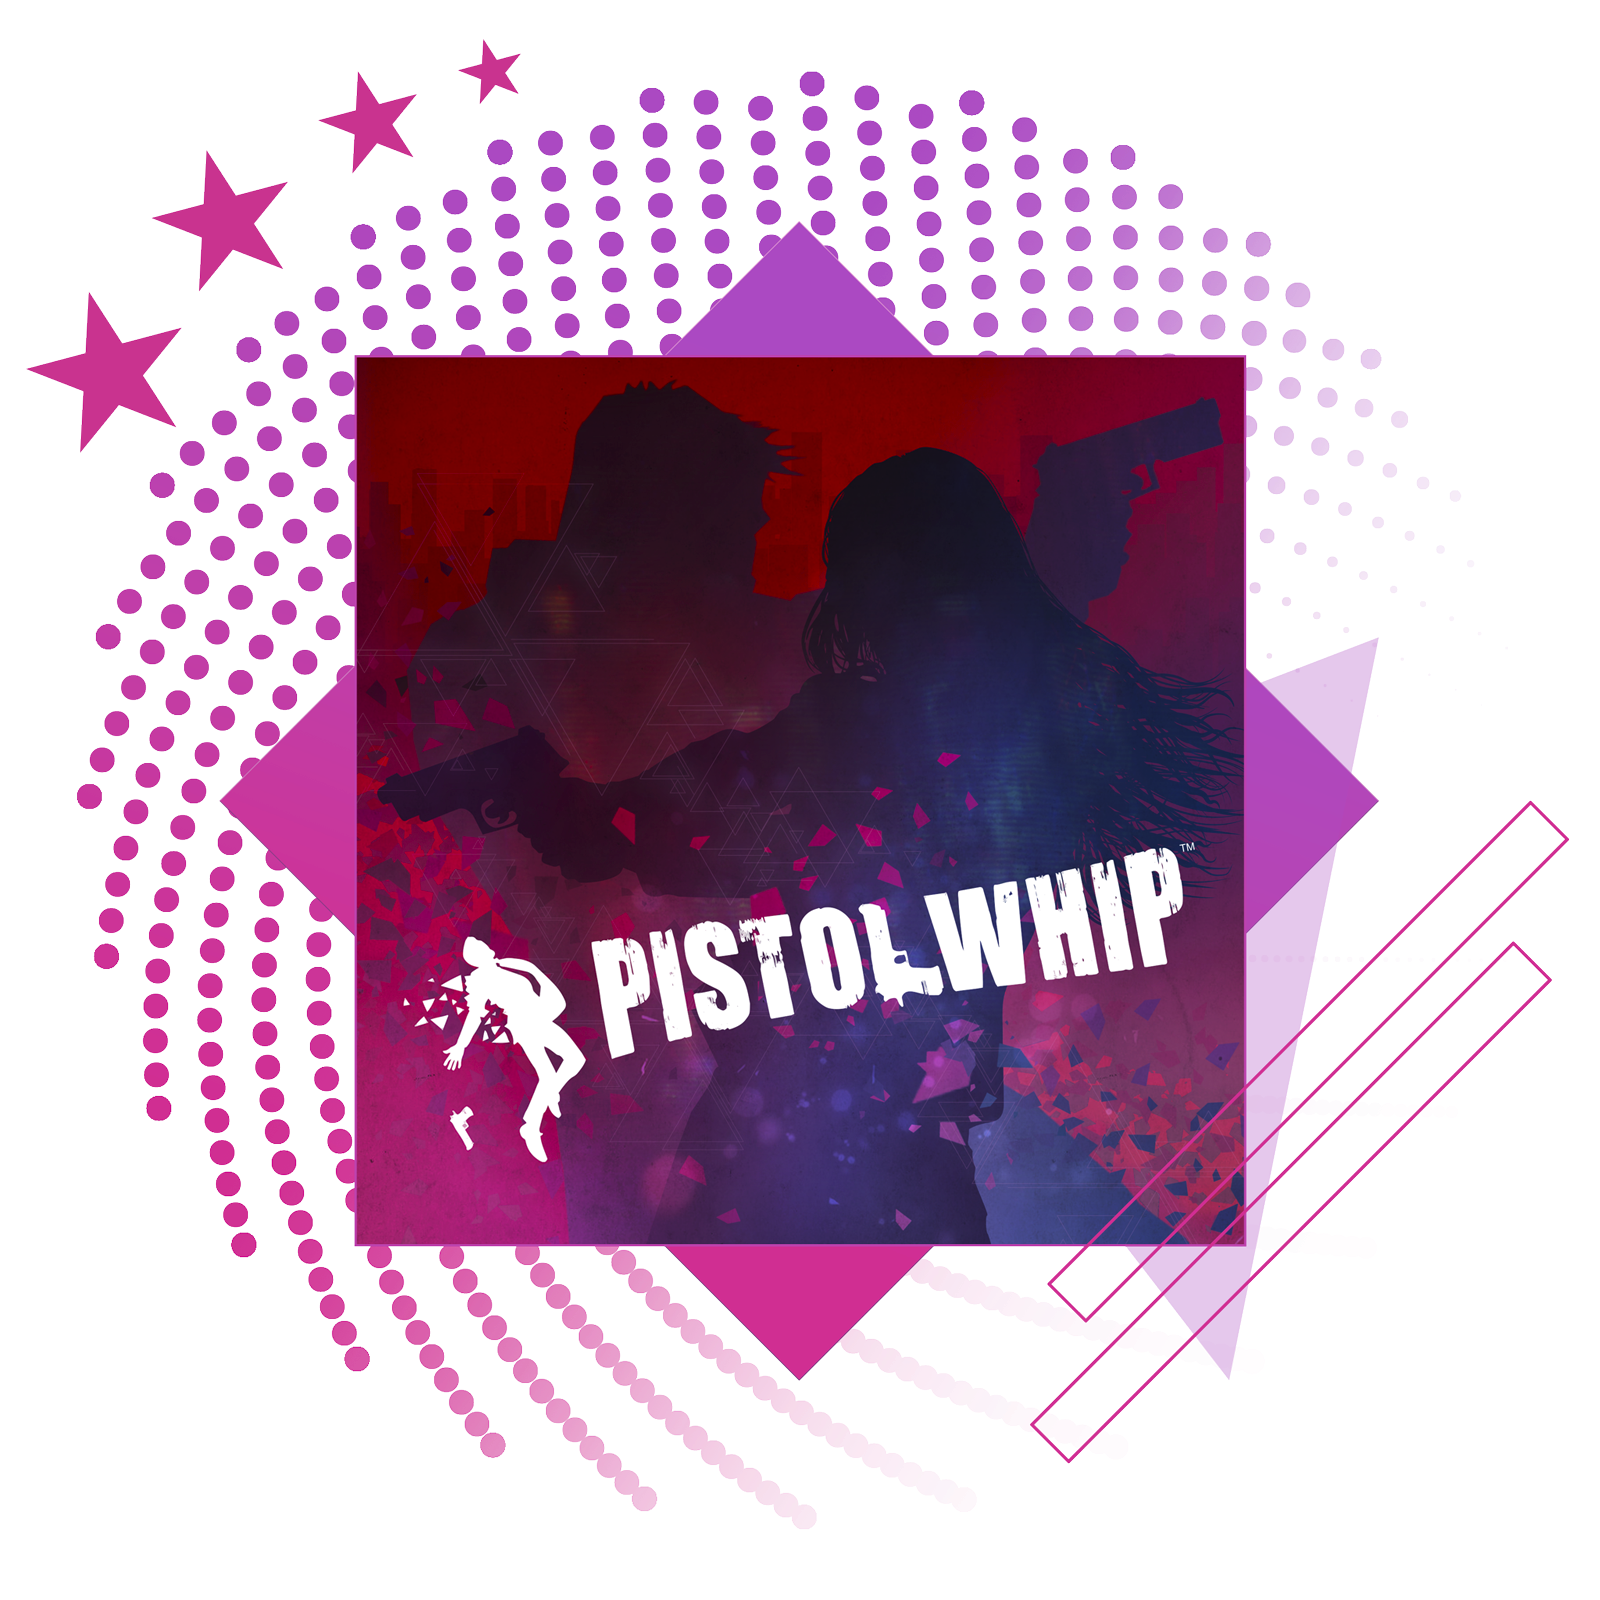 Bedste rytmespil-funktionsbillede med nøglegrafik fra Pistol Whip.